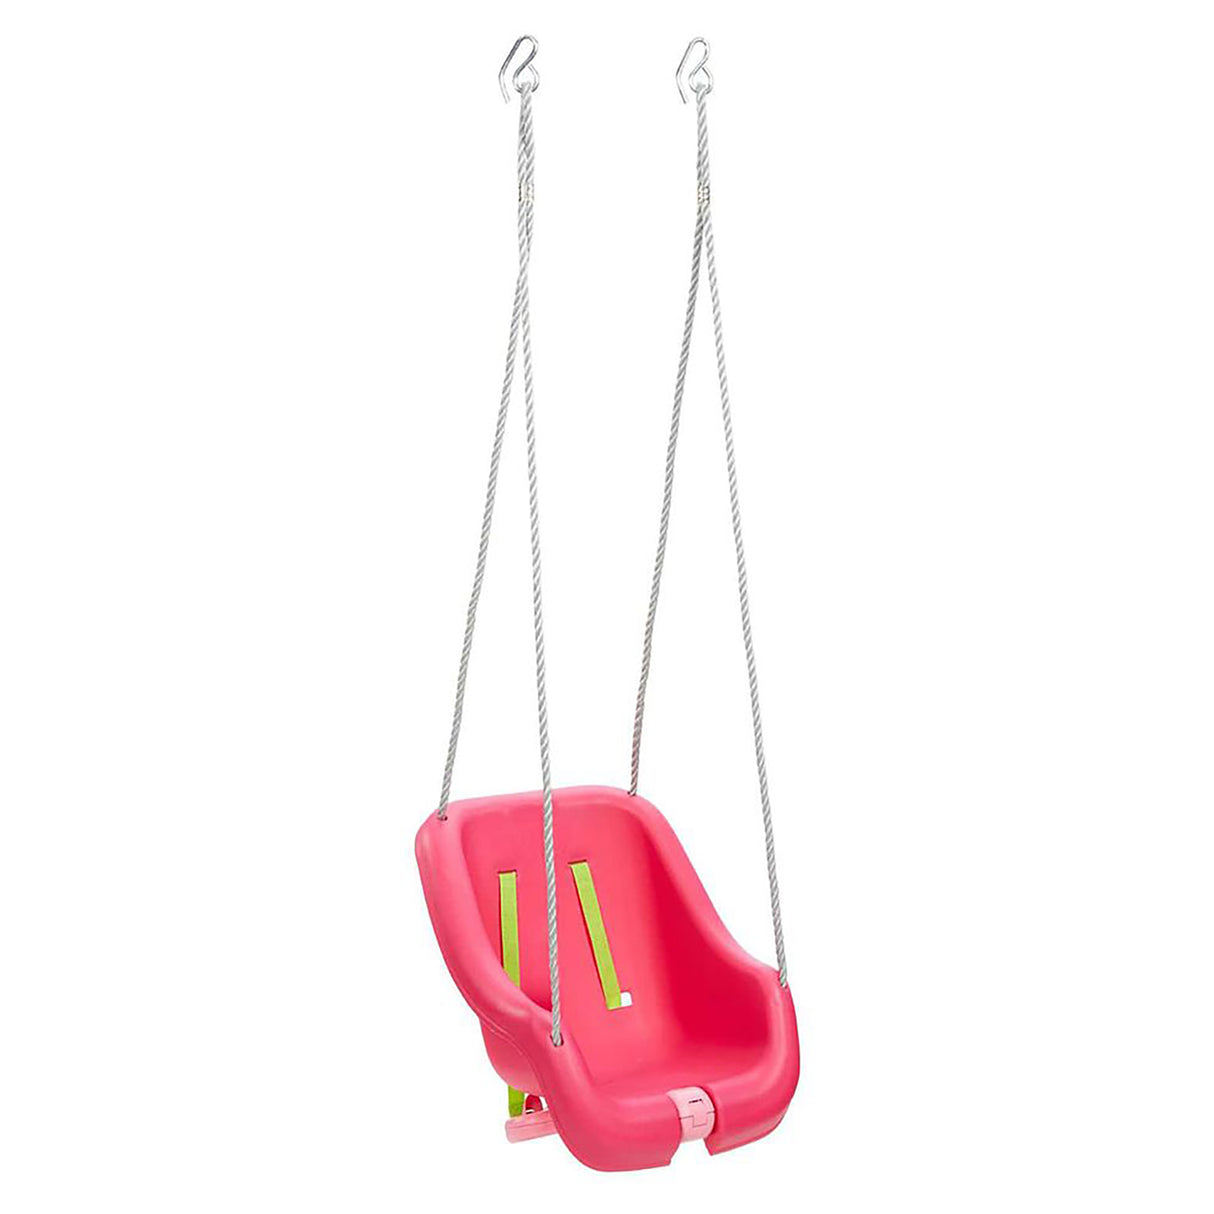 Little Tikes 2-In-1 Snug 'N Secure Swing, Pink